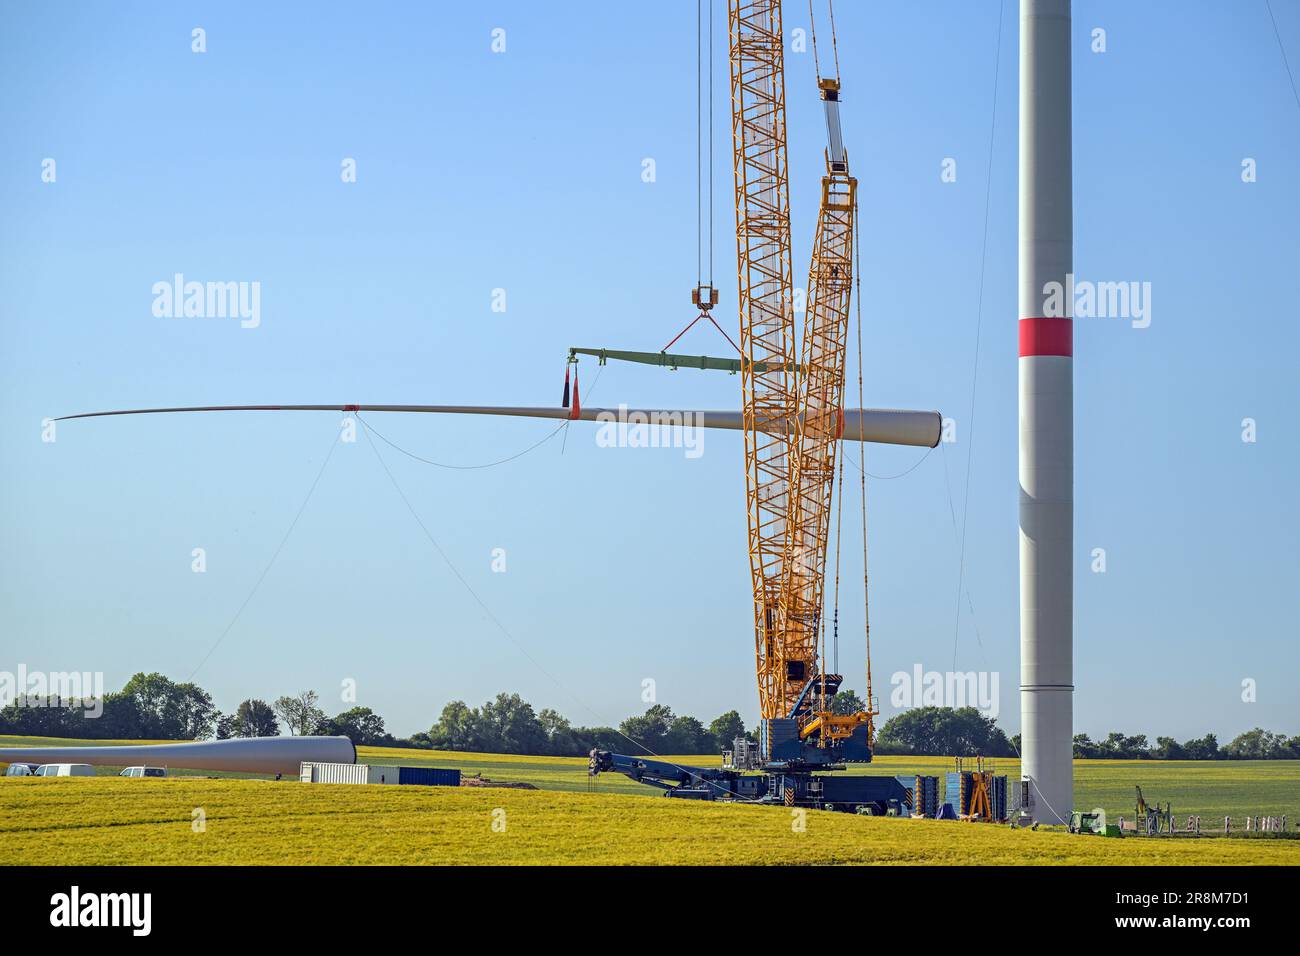 Cantiere di costruzione di turbine eoliche, gru sta sollevando una pala per installarla sulla torre, industria pesante per l'elettricità, energia rinnovabile ed energia, rur Foto Stock